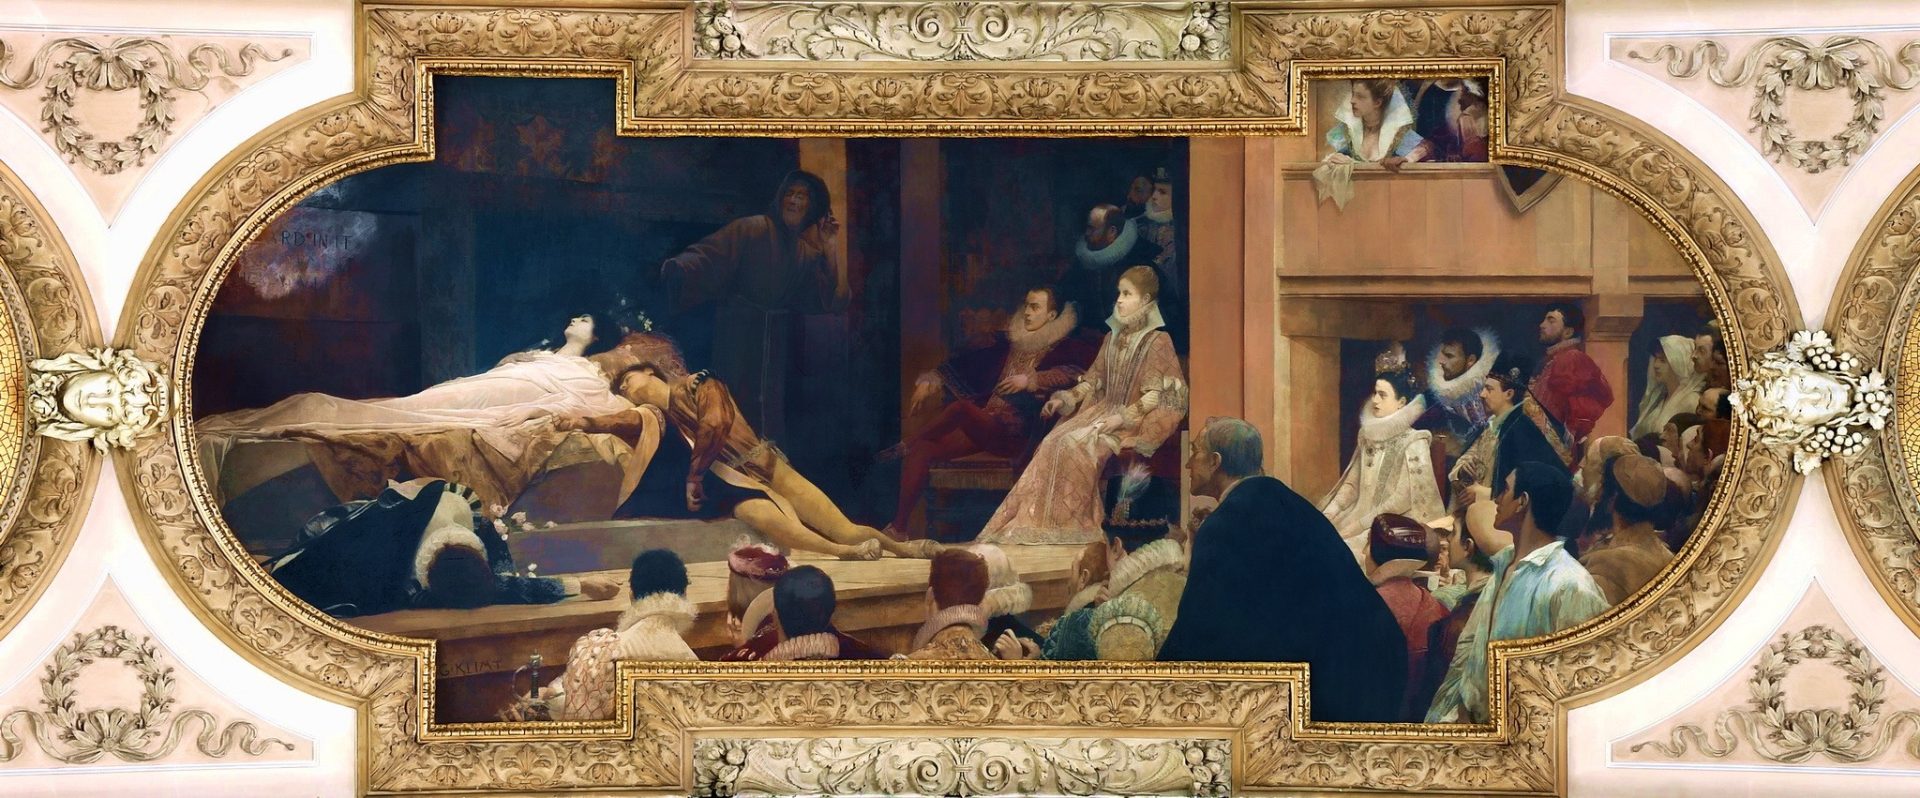 Гycmaв Климт. Спектакль Венского театра, сцена гибели Ромео и Джульетты. Густав Климт — широко известный австрийский художниц, основоположник модерна в австрийской живописи. Главным предметом его живописи было женское тело, и большинство его работ отличает откровенный эротизм…